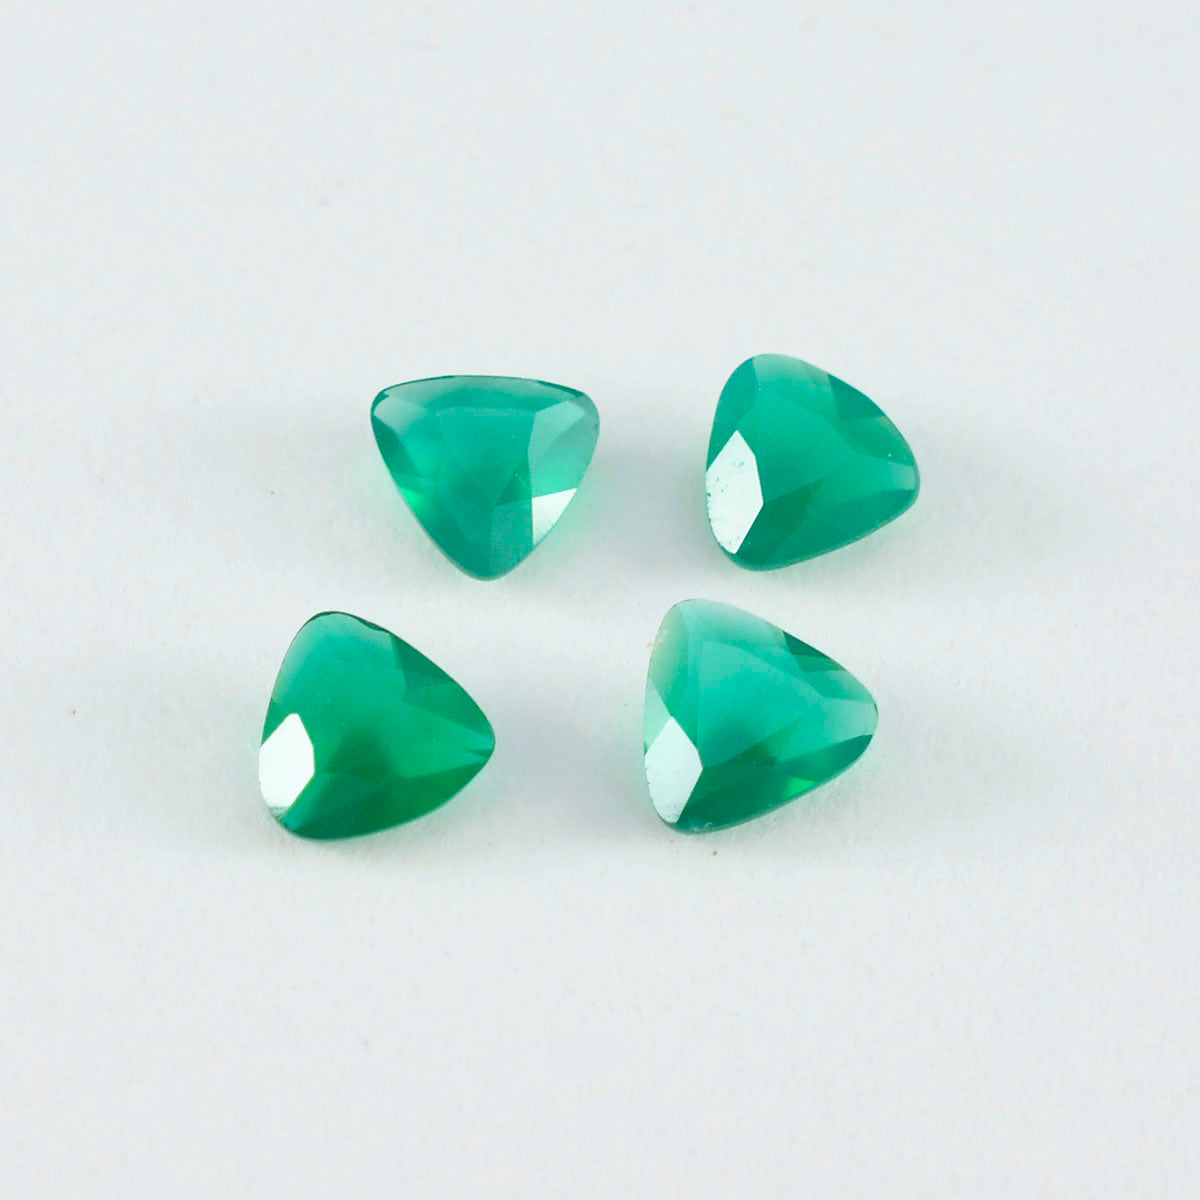 Riyogems 1 pièce d'onyx vert véritable à facettes 8x8mm en forme de trillion, pierres précieuses de merveilleuse qualité